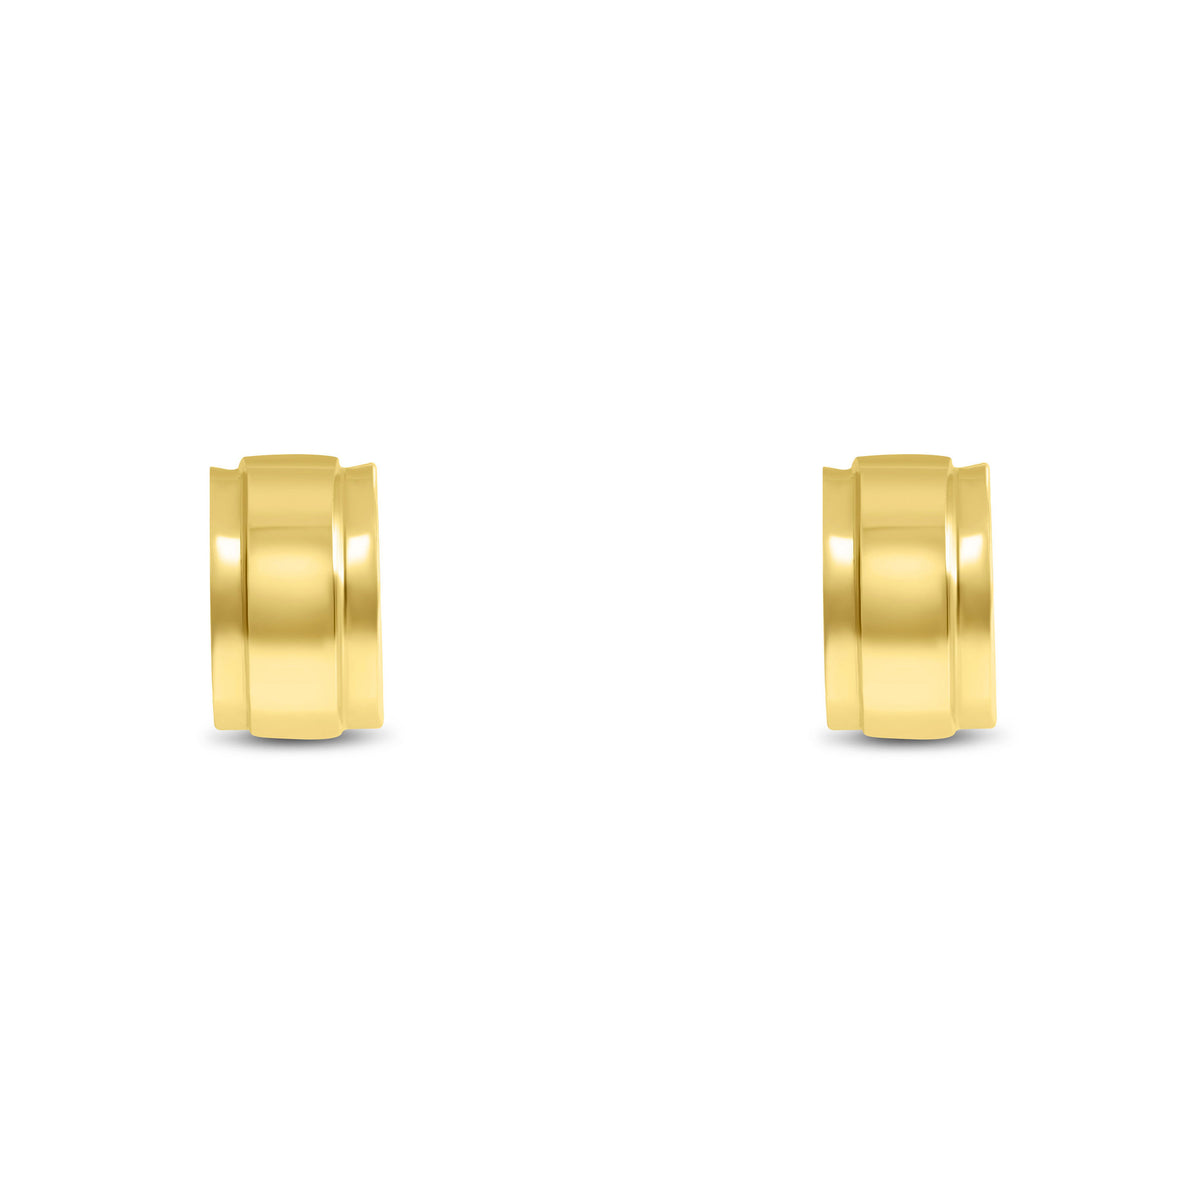 Buy Earrings For Kids | Gold & Diamond Earrings For Kids Designs | CaratLane